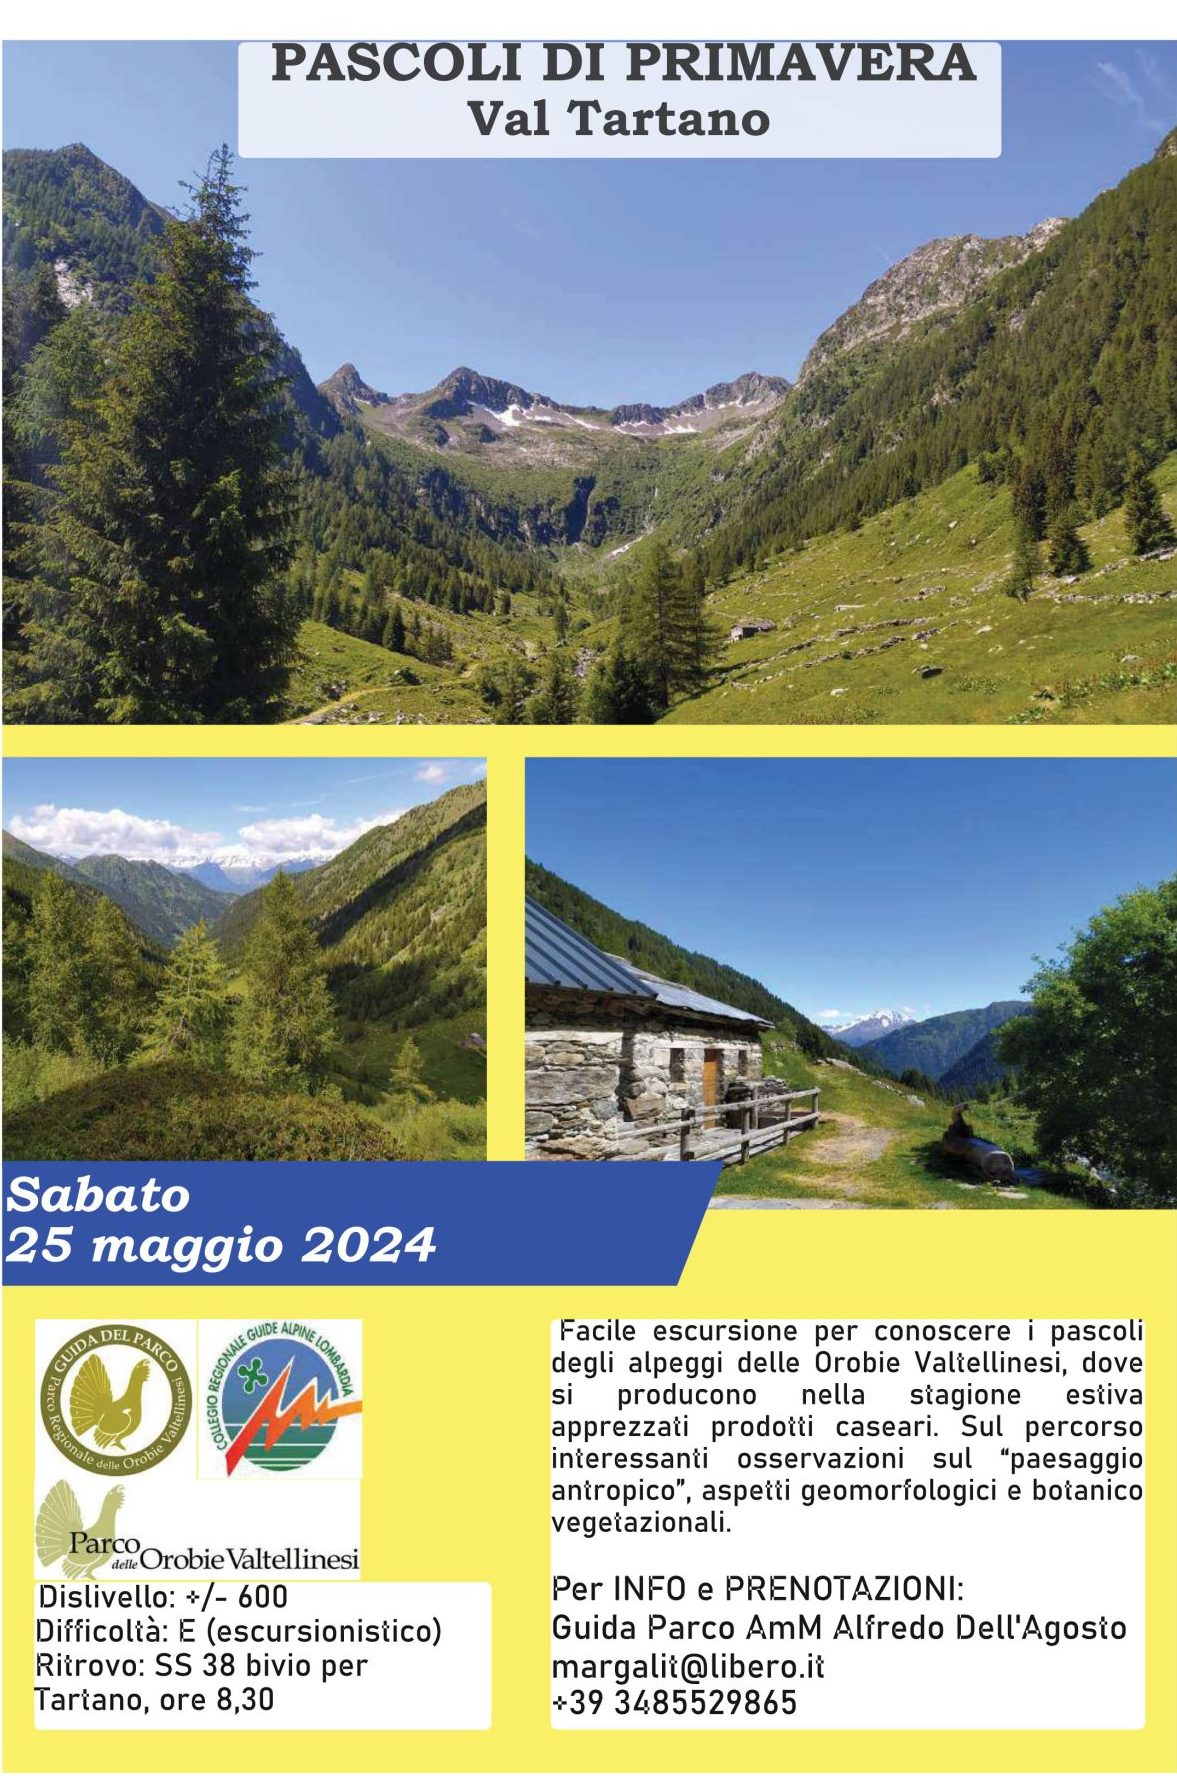 Escursione in Val Tartano